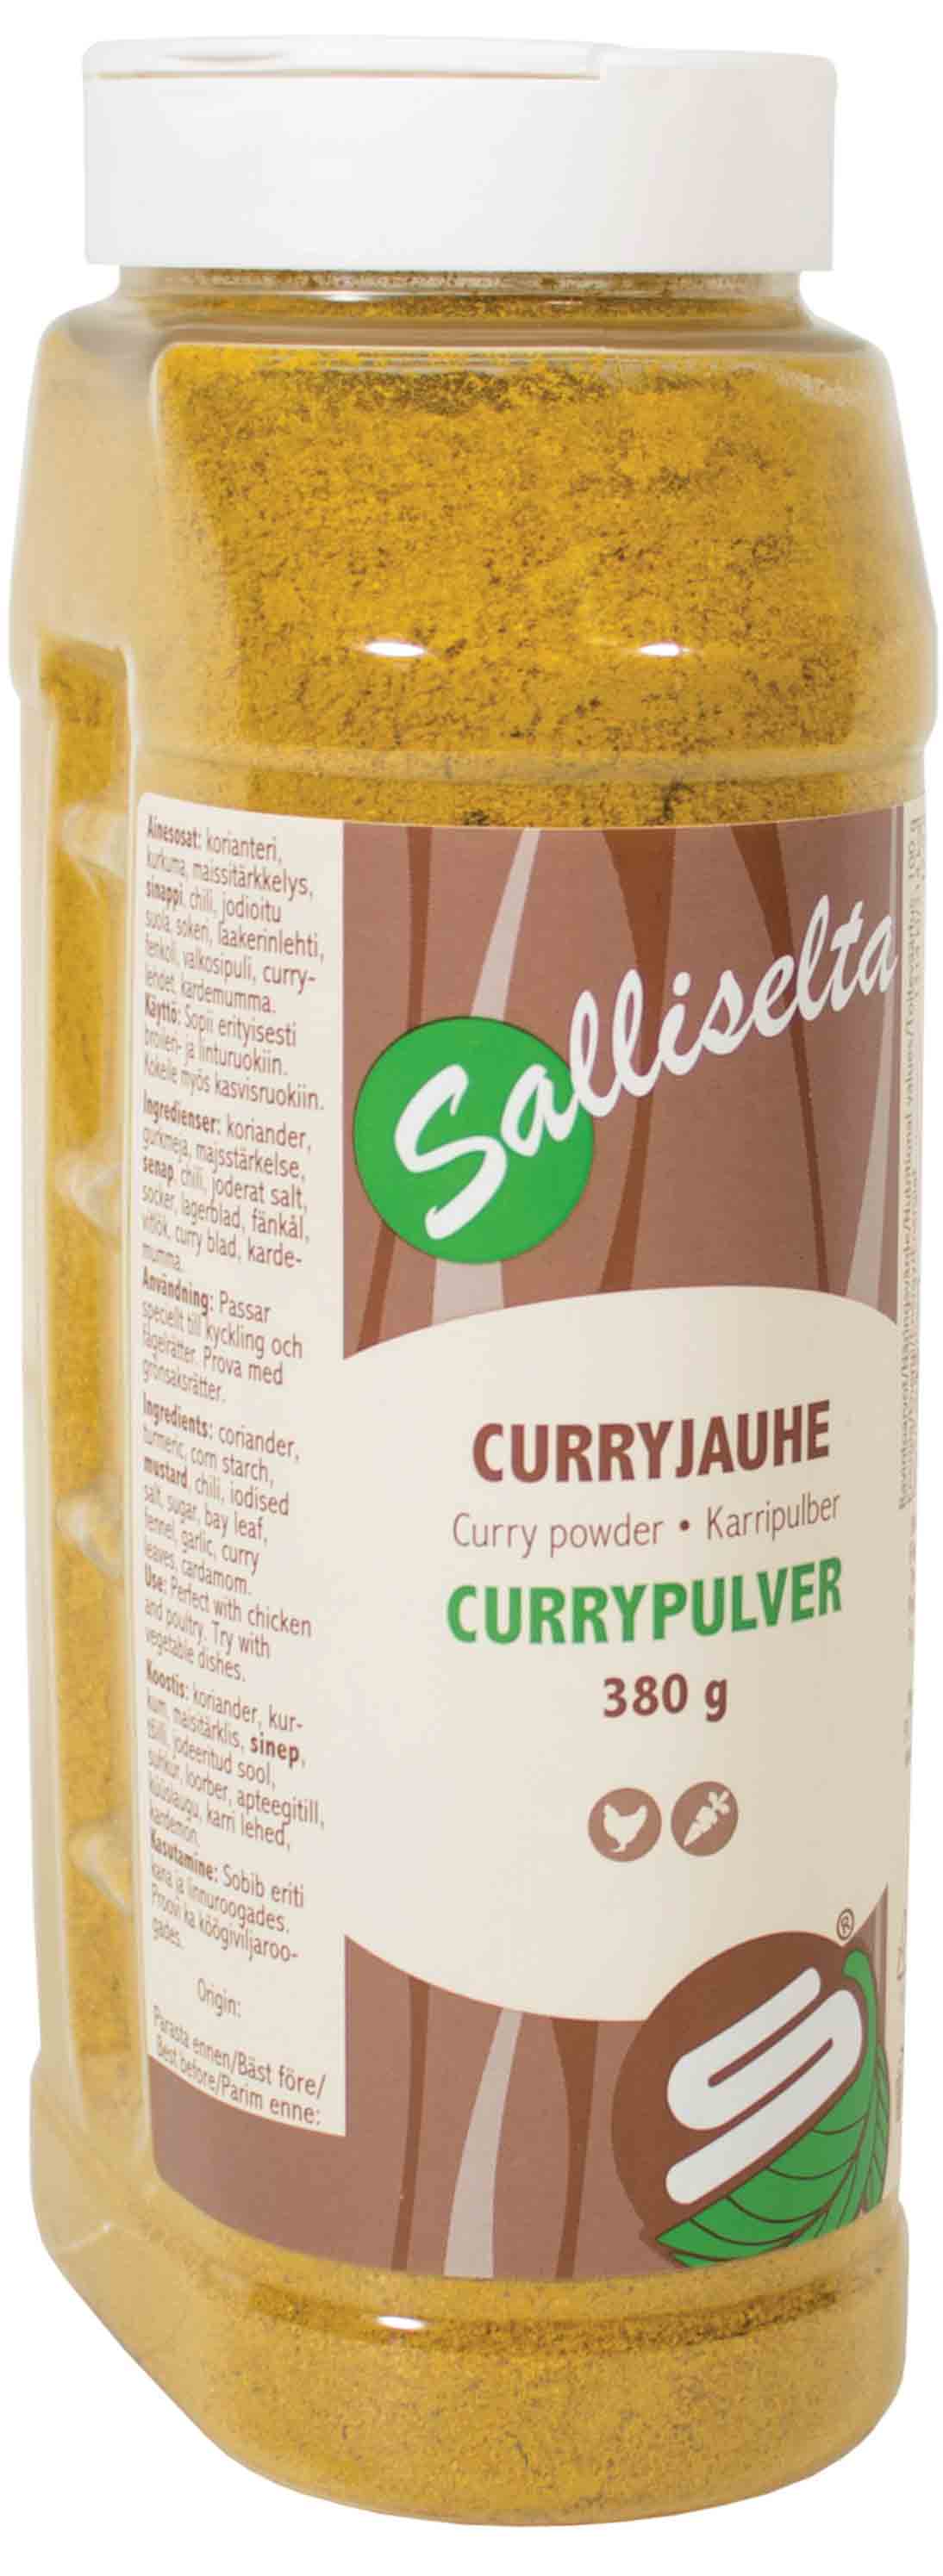 Salliselta Curryjauhe 380g